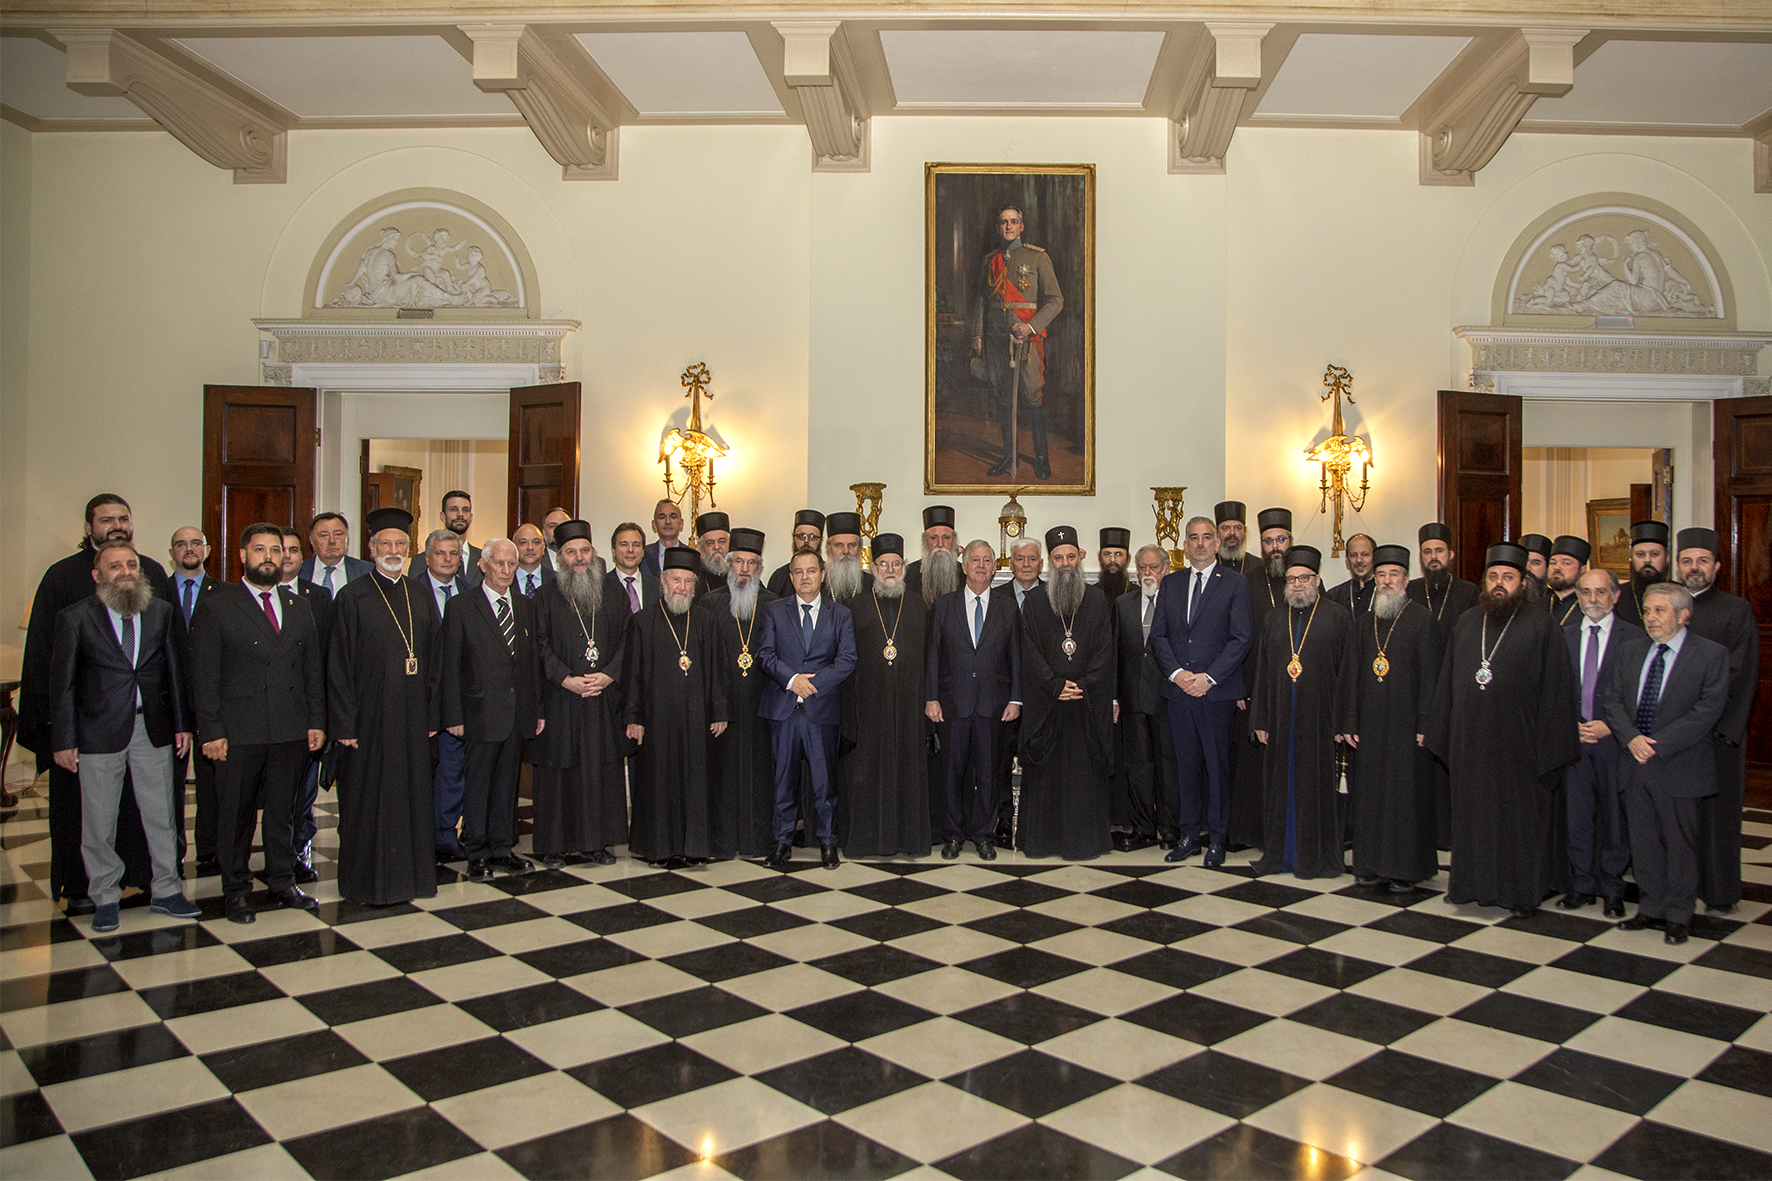 Večera za Sveti Arhijerejski Sabor Srpske pravoslavne crkve u Belom dvoru